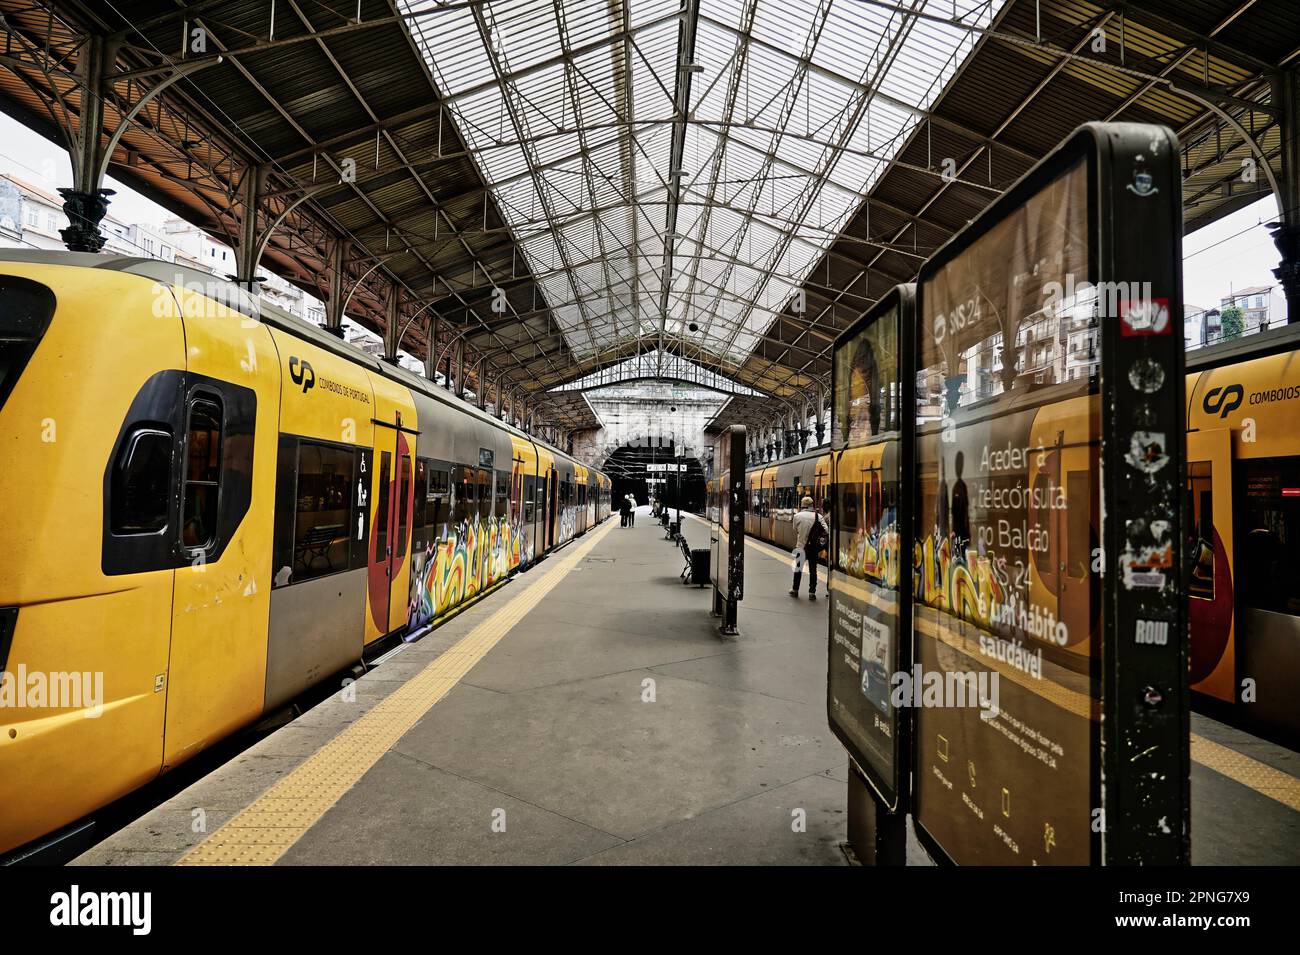 Trains, railway, railway in Porto Sao Bento station in Portugal in Porto, Portugal Stock Photo